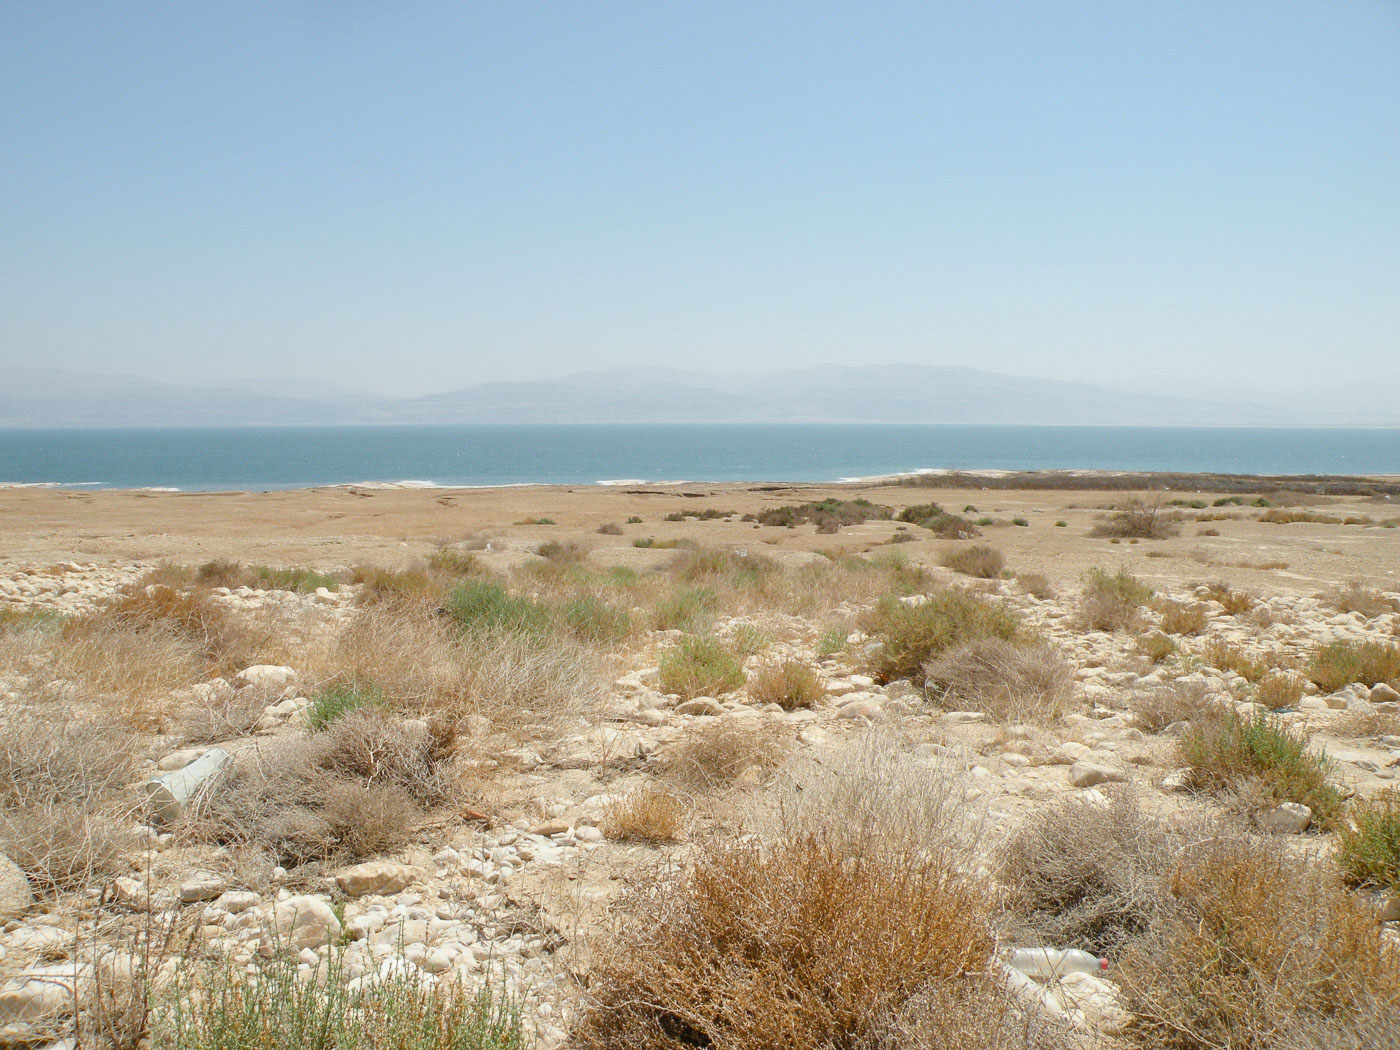 Эйн-Геди, image of landscape/habitat.